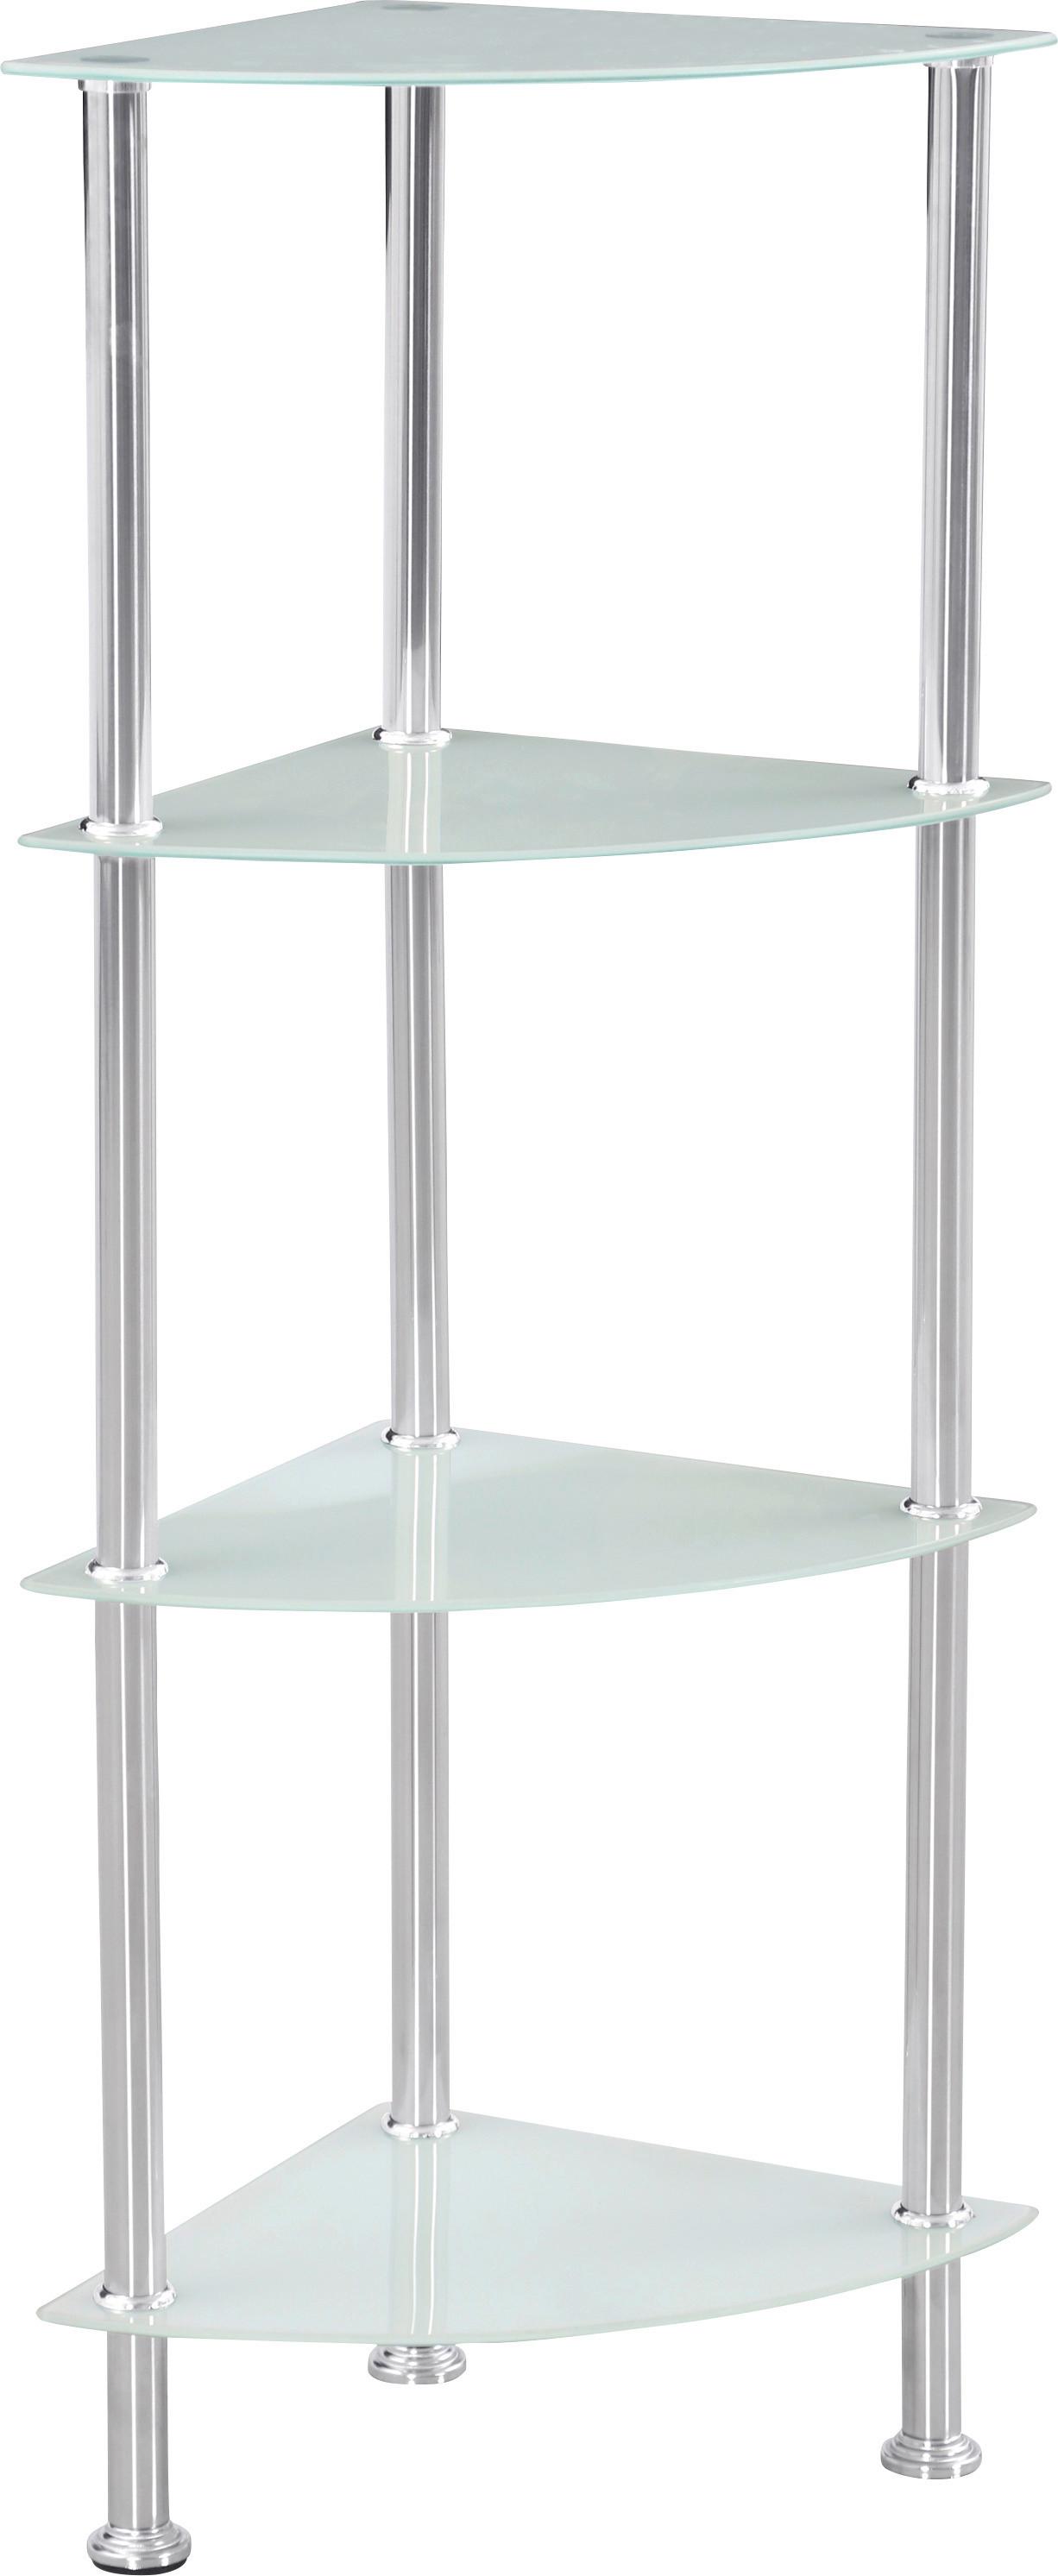 Eckregal mit Glasfächern Glare B 30cm, Edelstahl/Weiß - Edelstahlfarben/Weiß, MODERN, Glas/Metall (30/99/30cm) - Luca Bessoni